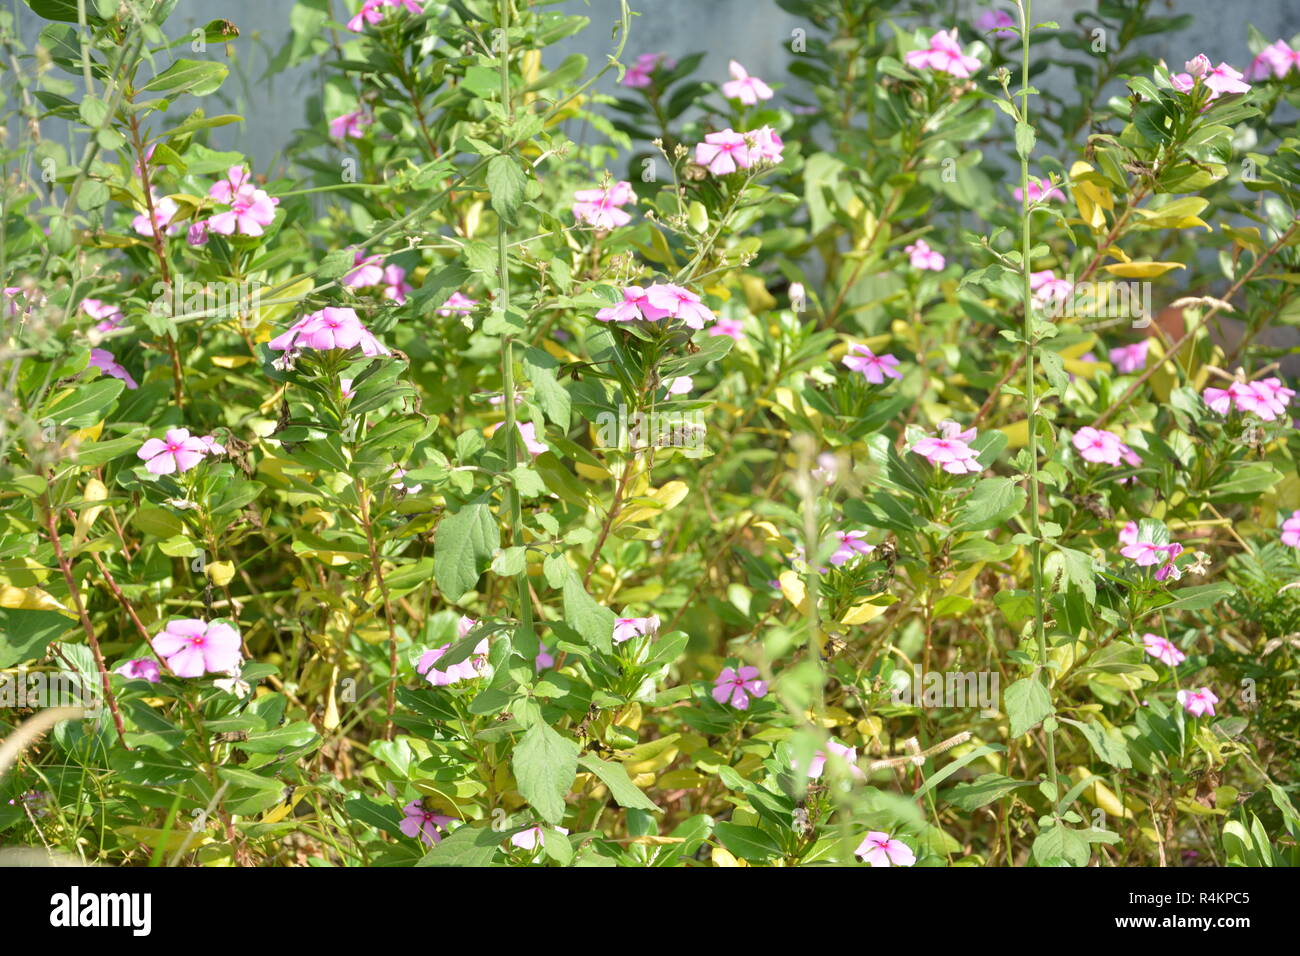 Einige charmante Catharanthus roseus - periwinkle Blumen fordert uns in einem Garten mit ihren Charme Stockfoto